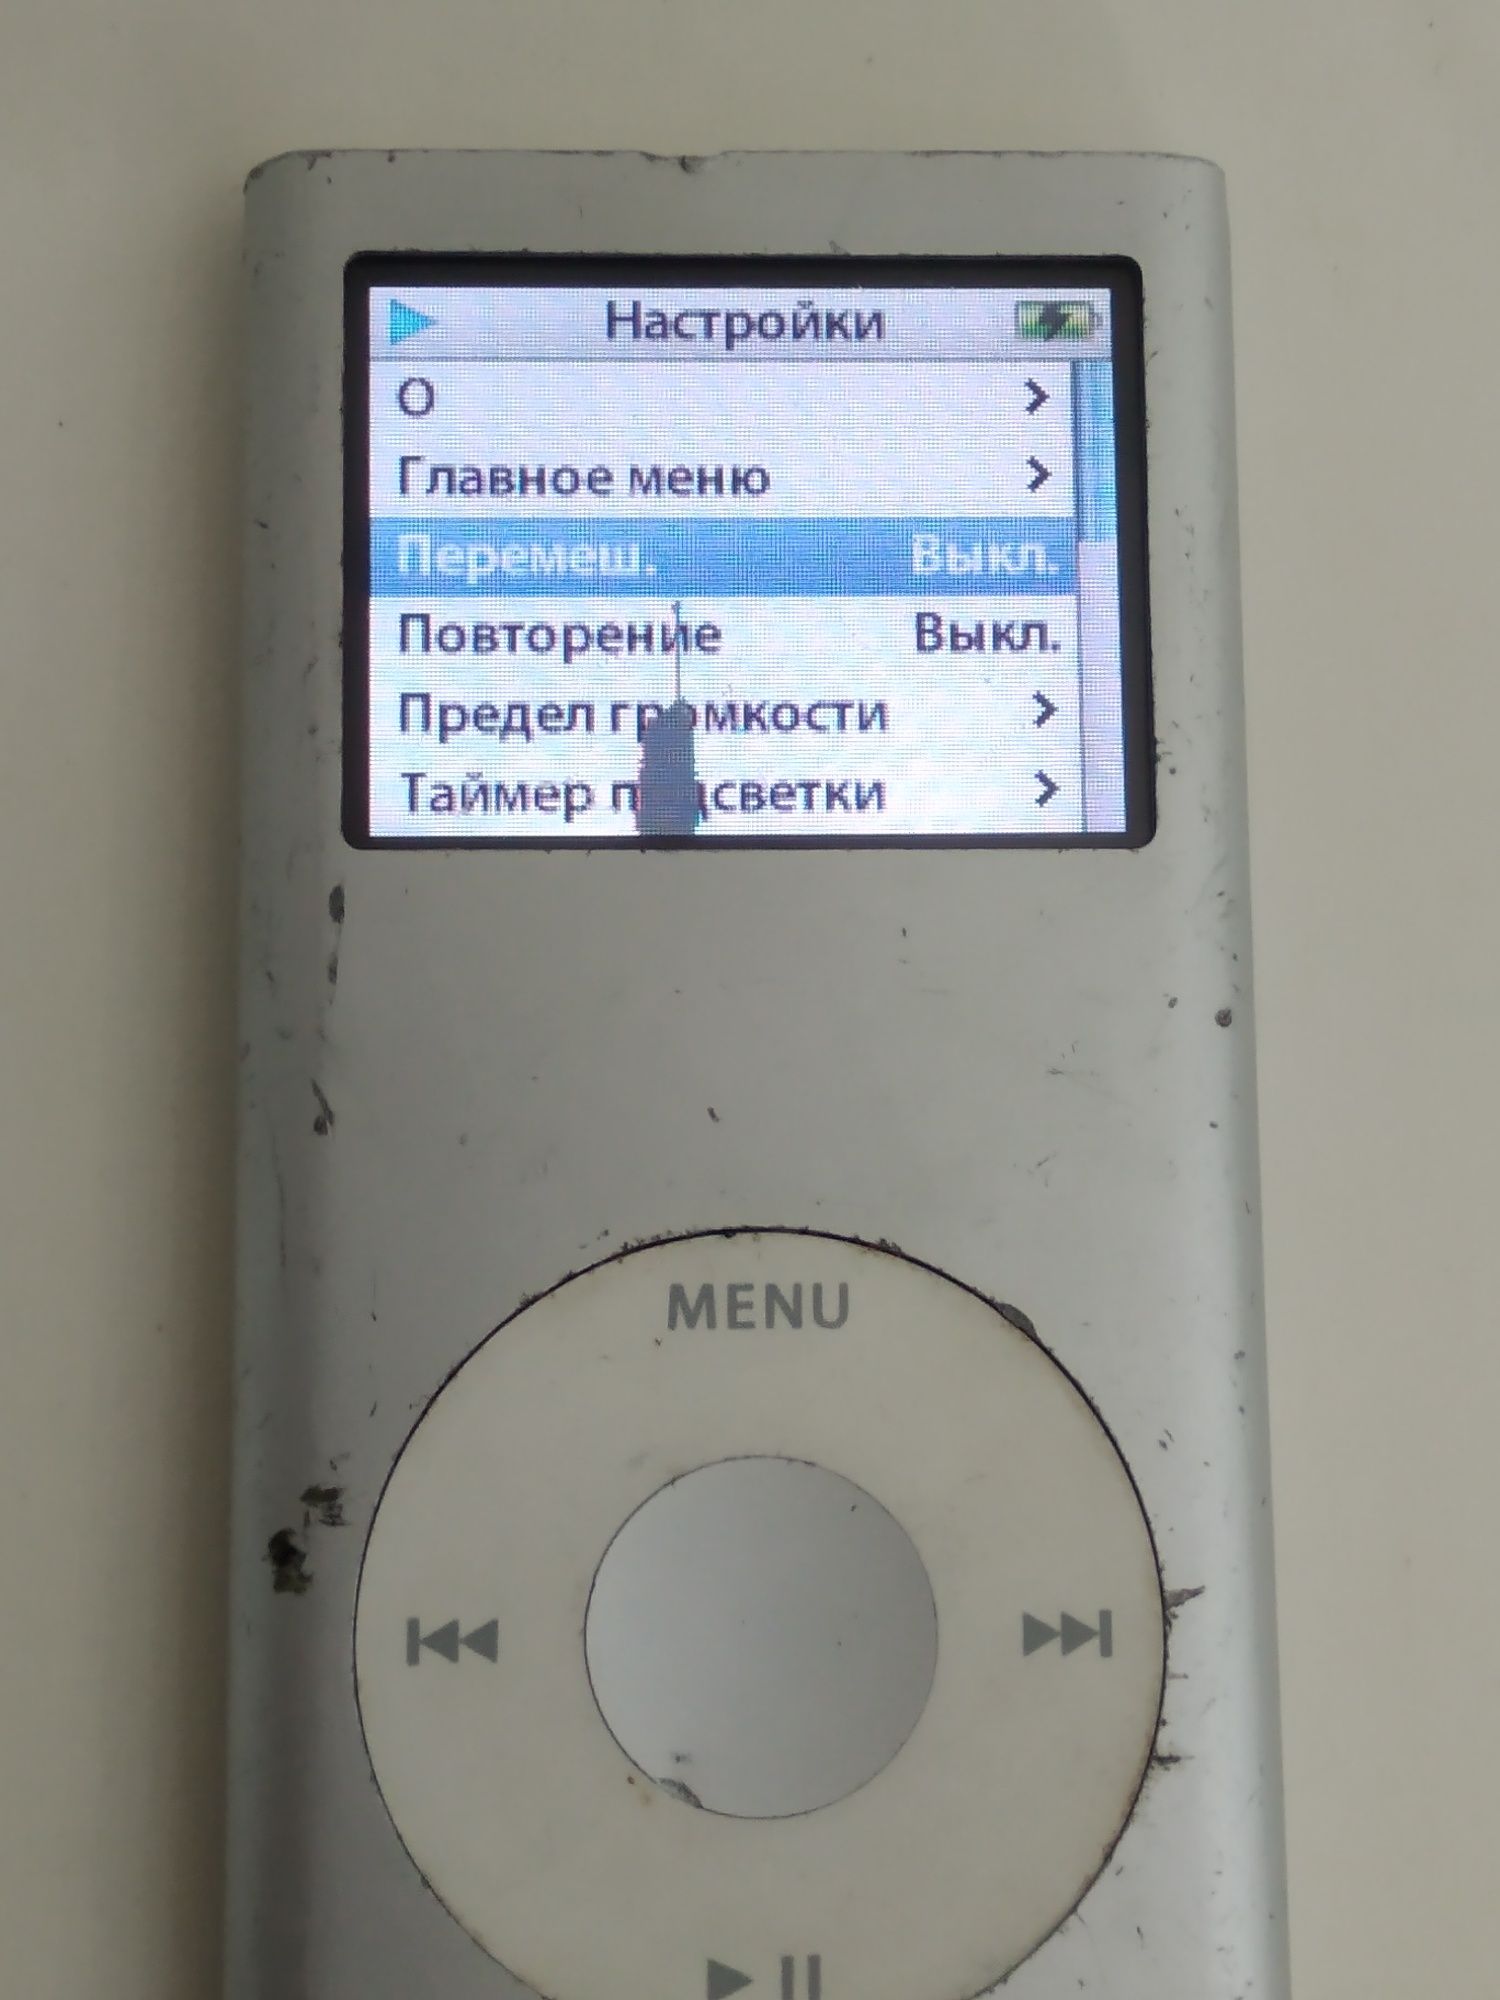 iPod model A 1199 4 gb